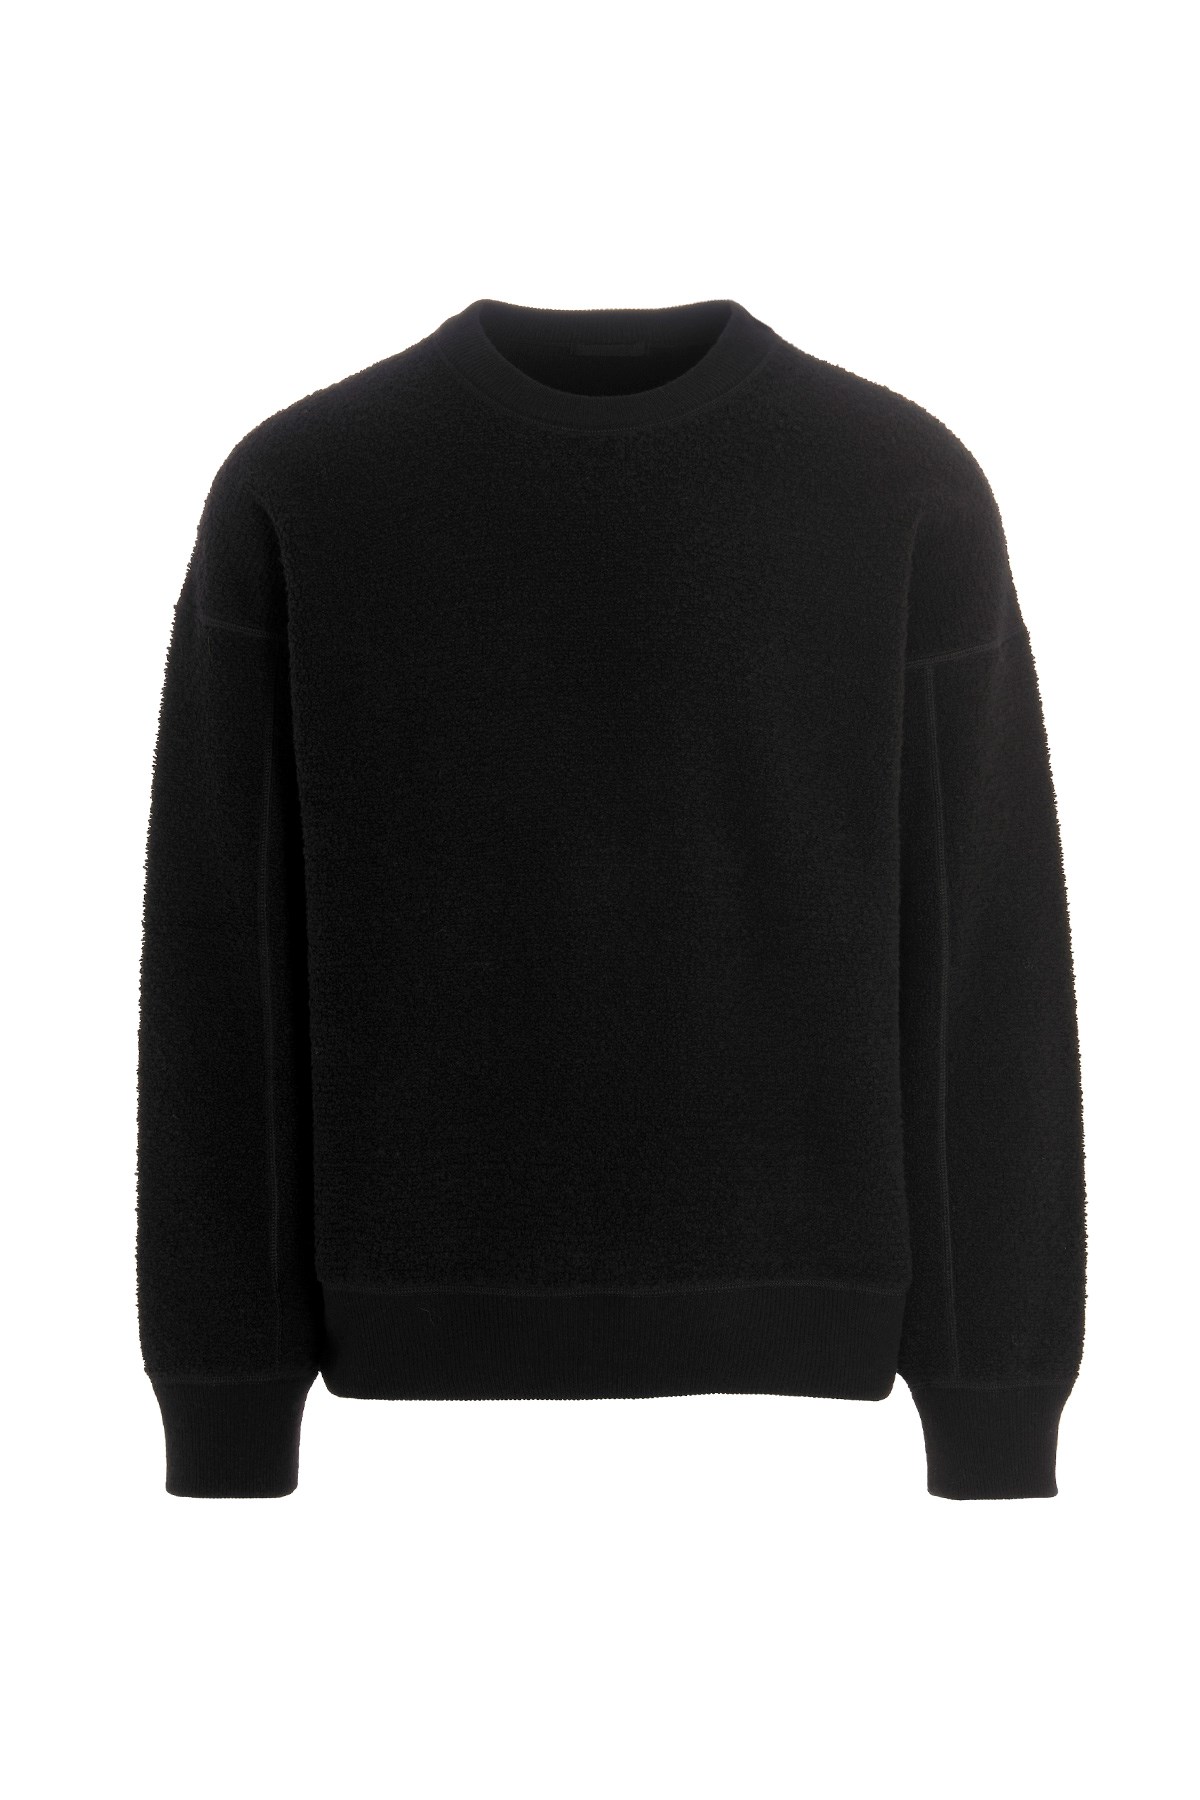 TEN C Reverse Wool Sweater